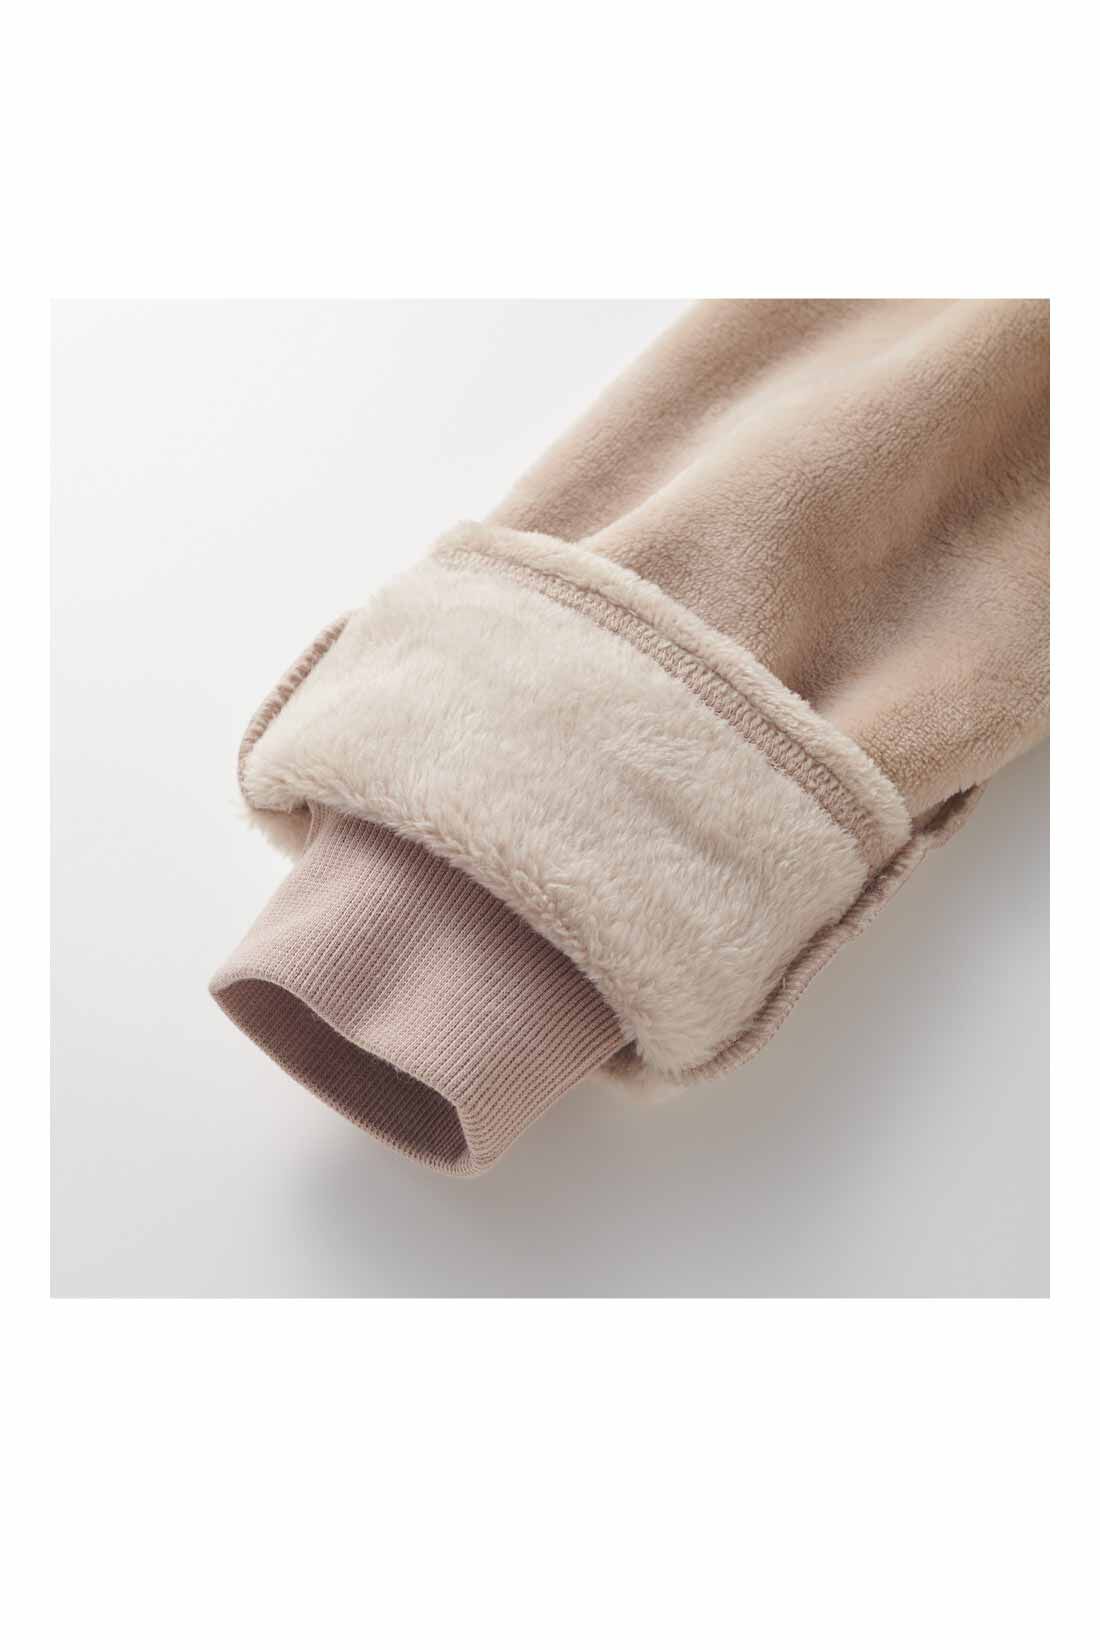 Live in  comfort|リブ イン コンフォート おうちの節電対策にもぴったり 全身包まれる両面起毛ワンピース〈ベージュ〉|指先はミトン手袋のようなカバー付き。ミトンをめくるとリブ仕様で冷気をブロック。室内でも冷えやすい指先をやさしく暖めます。